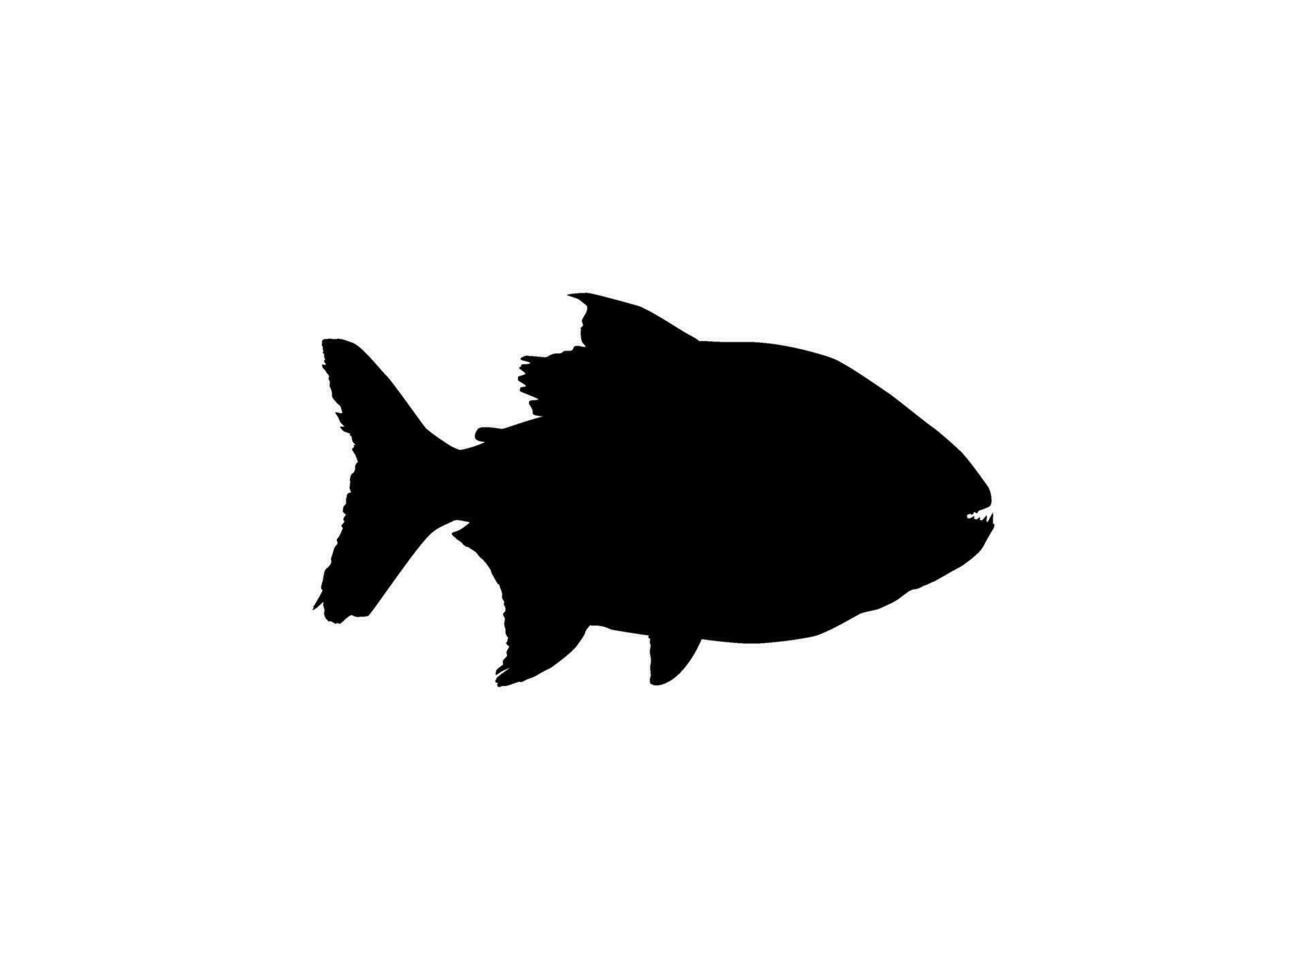 piraña pescado silueta, lata utilizar para logo gramo, sitio web, Arte ilustración, pictograma, icono o gráfico diseño elemento. vector ilustración